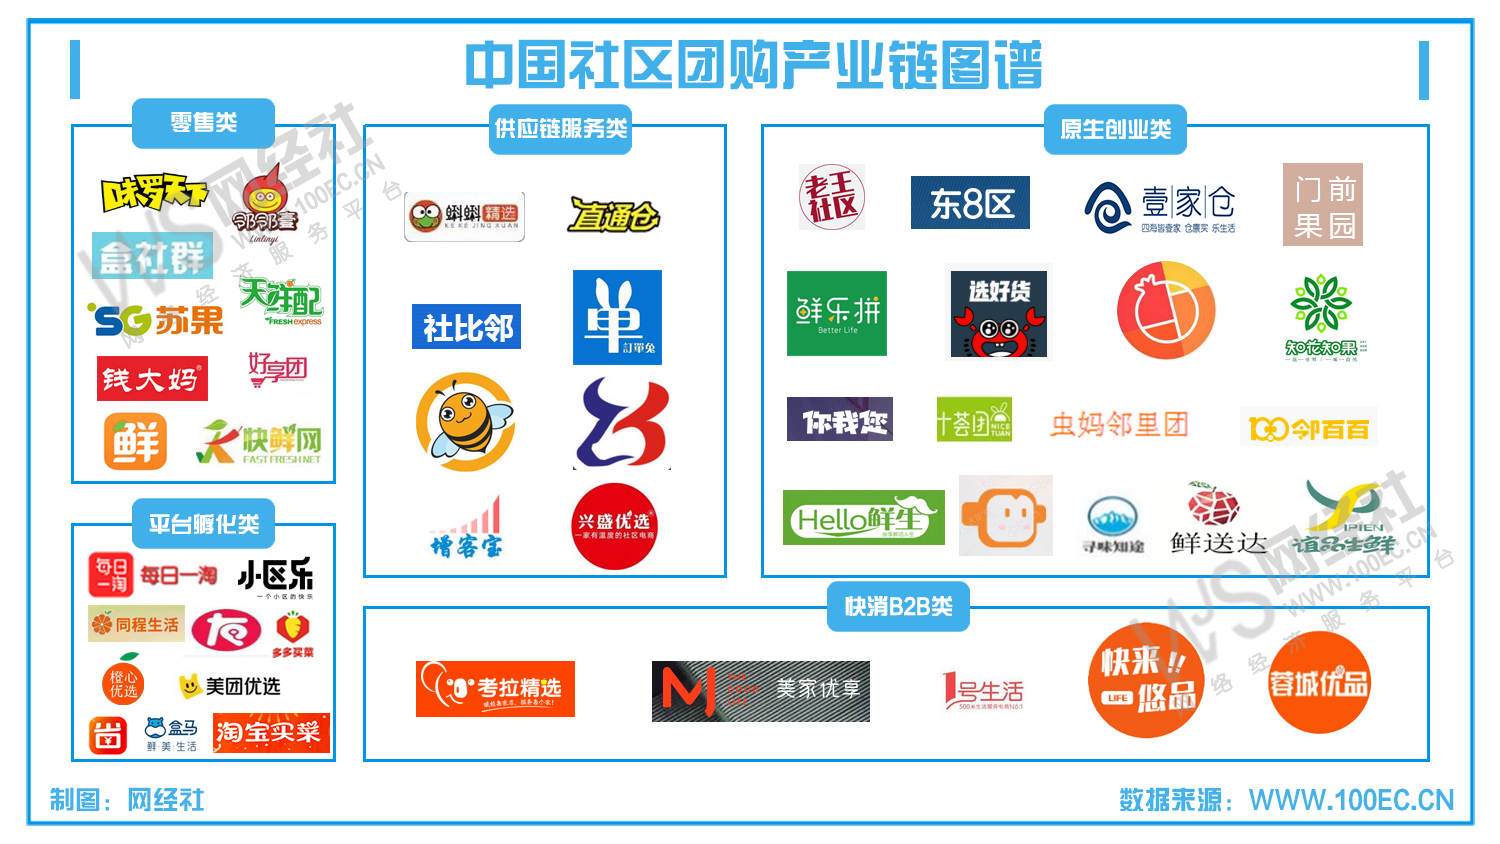 中国社区团购产业链图谱.jpg